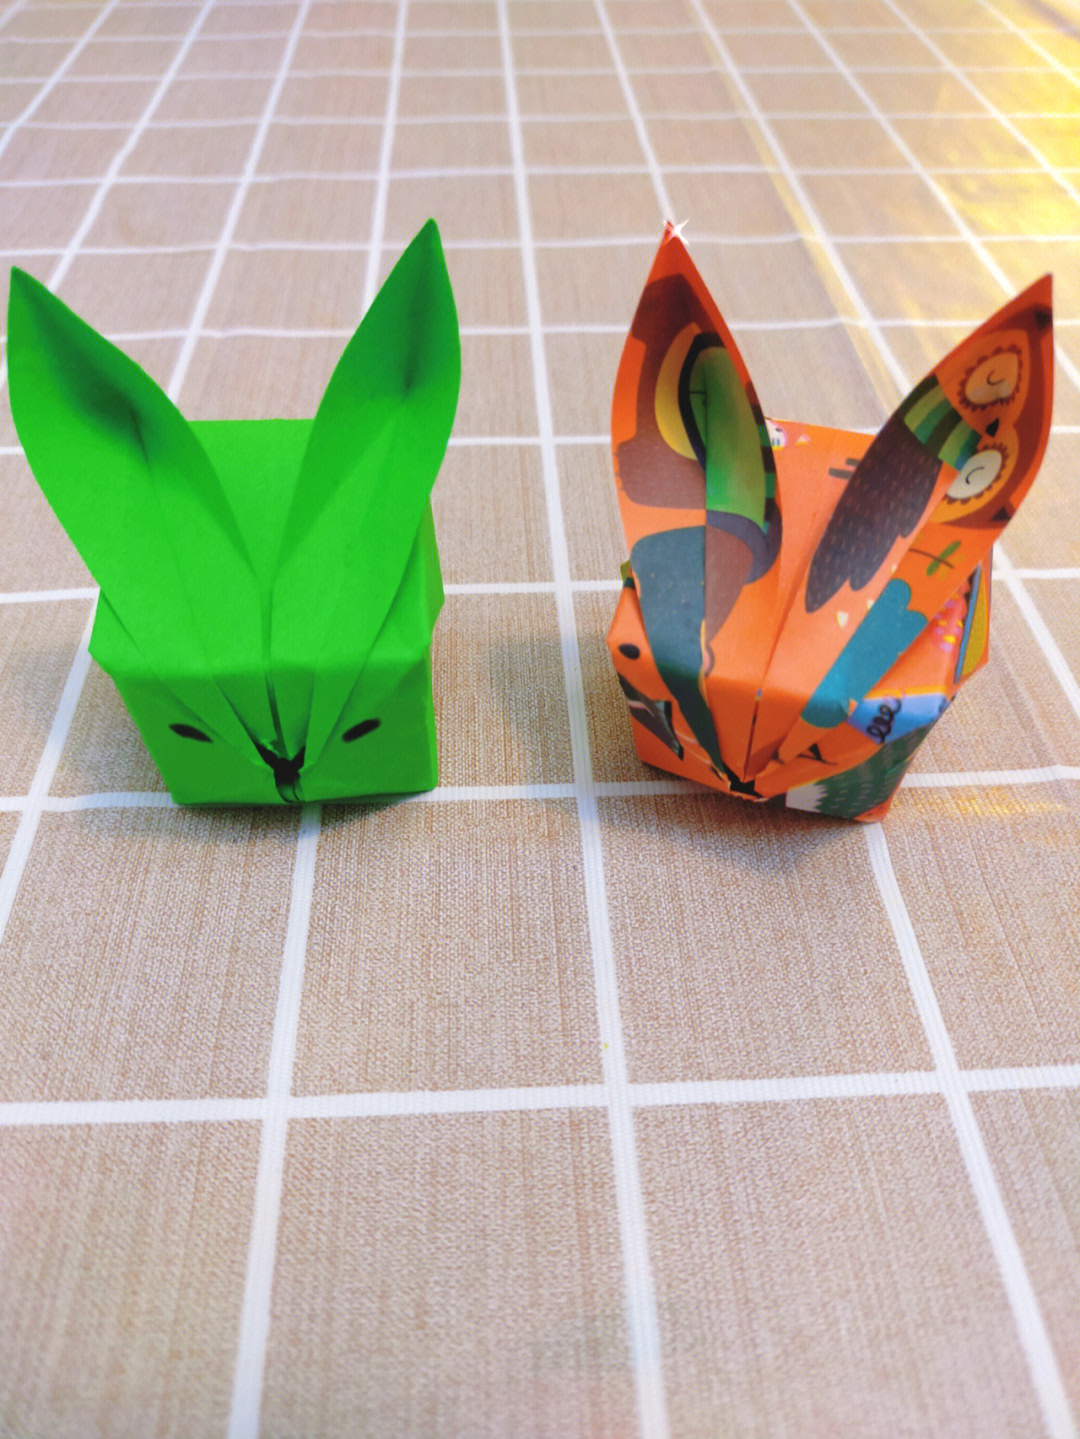 用纸箱做小兔子教程图片